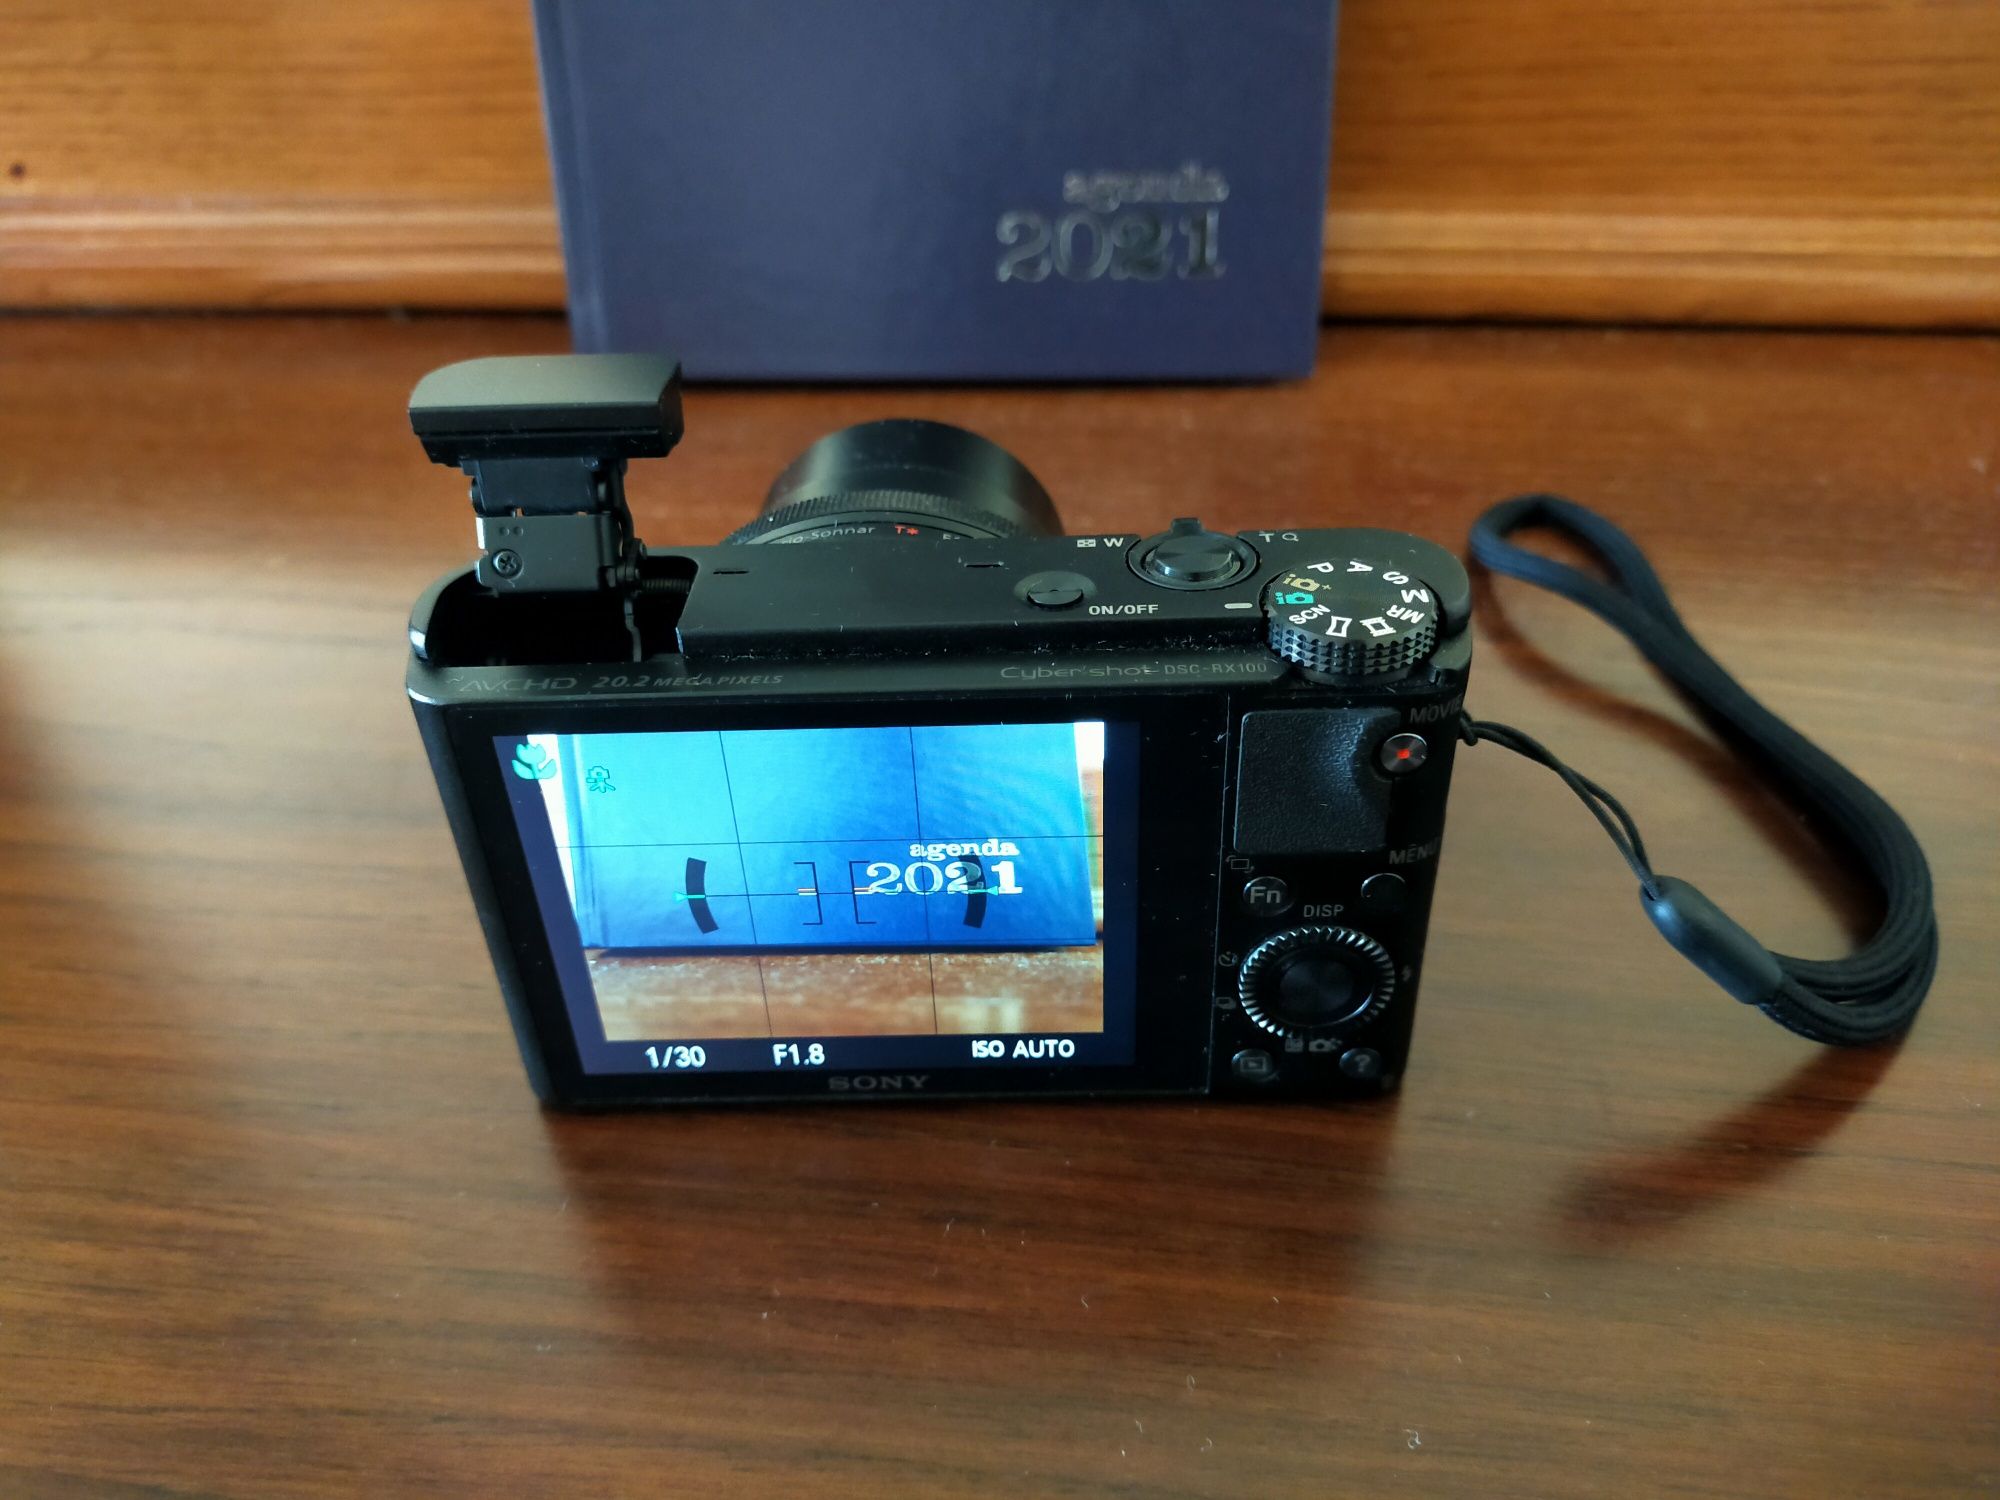 Máquina fotográfica DSC-RX 100 SONY